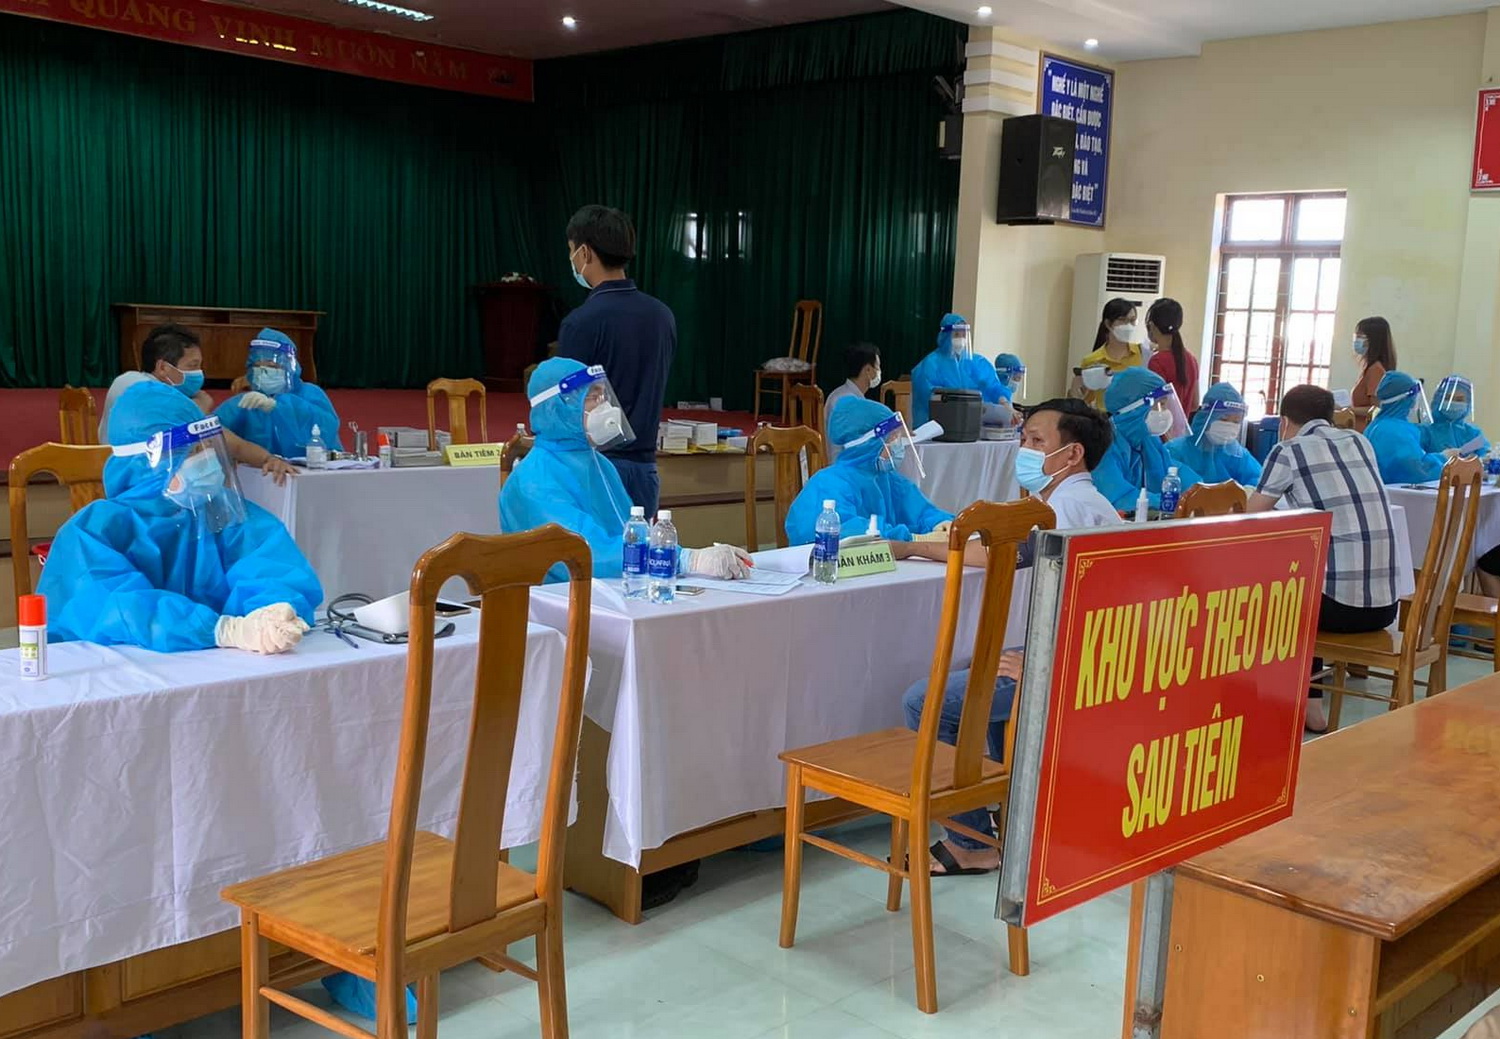 Quảng Bình: Một giáo viên cố tình khai báo sai để tiêm 2 mũi vaccine phòng Covid-19 - Ảnh 1.